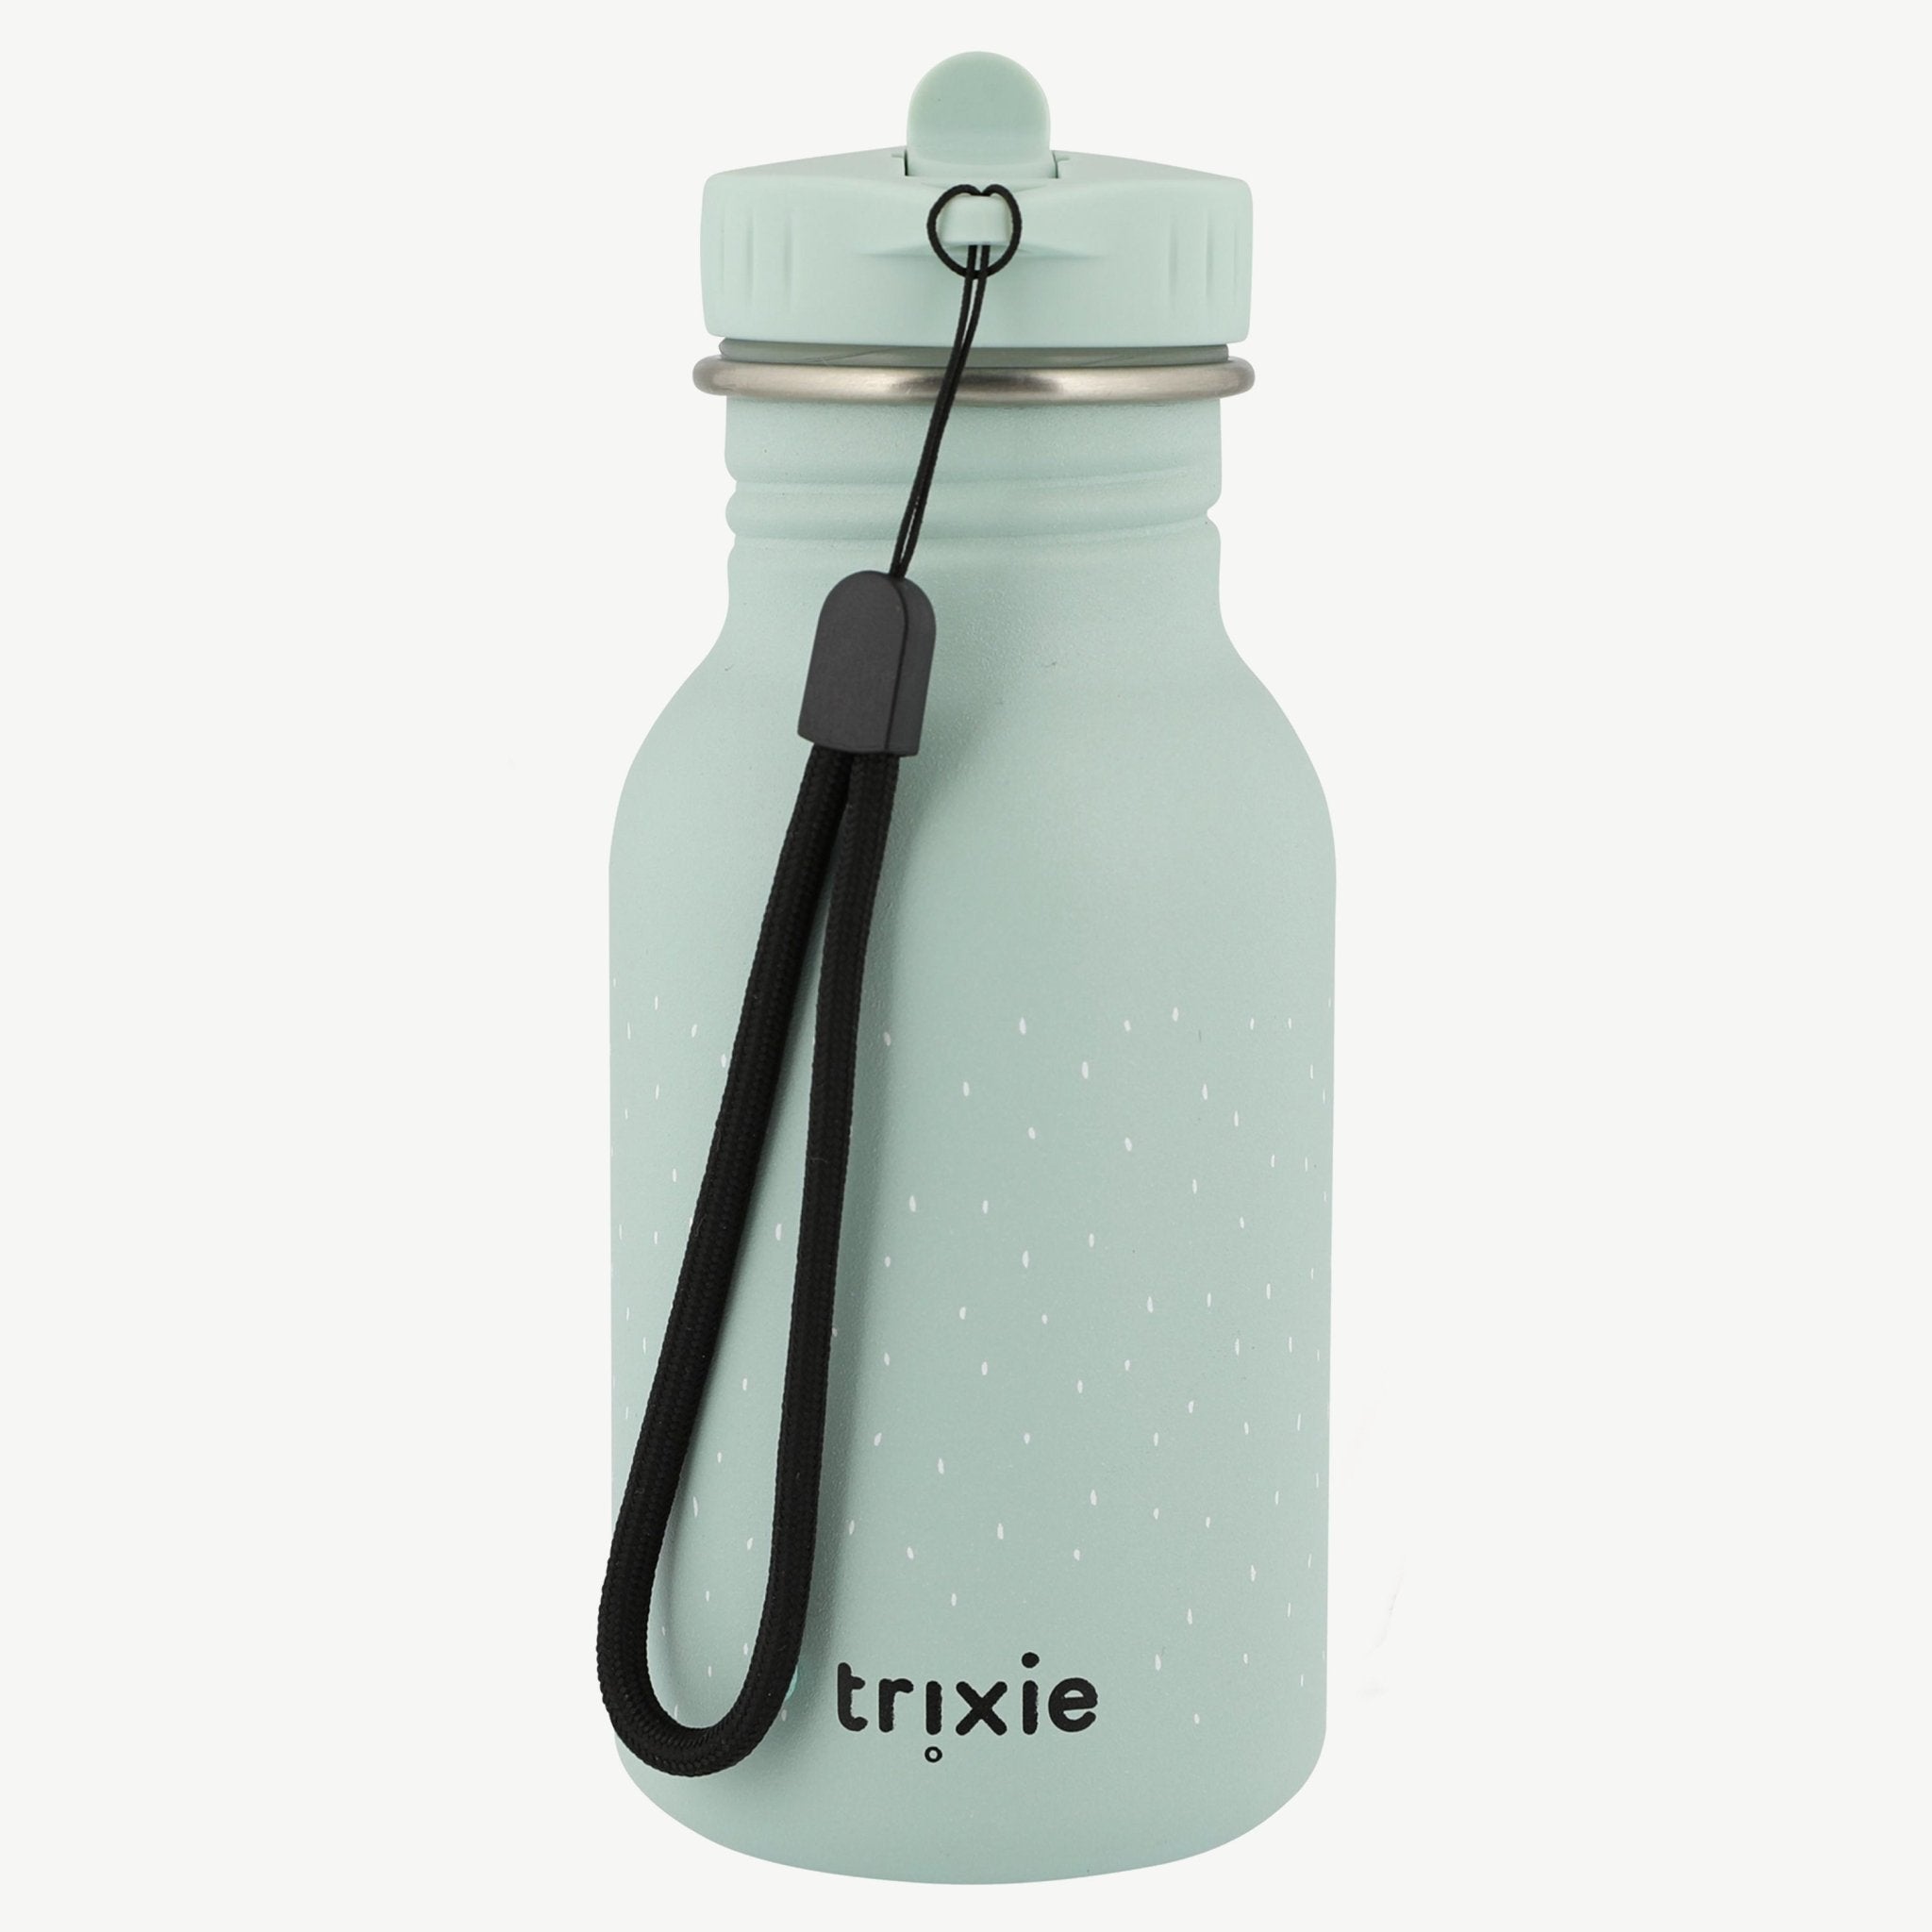 Trixie Magische Tierdesign-Trinkflasche - Spass und Funktion vereint! 🐾